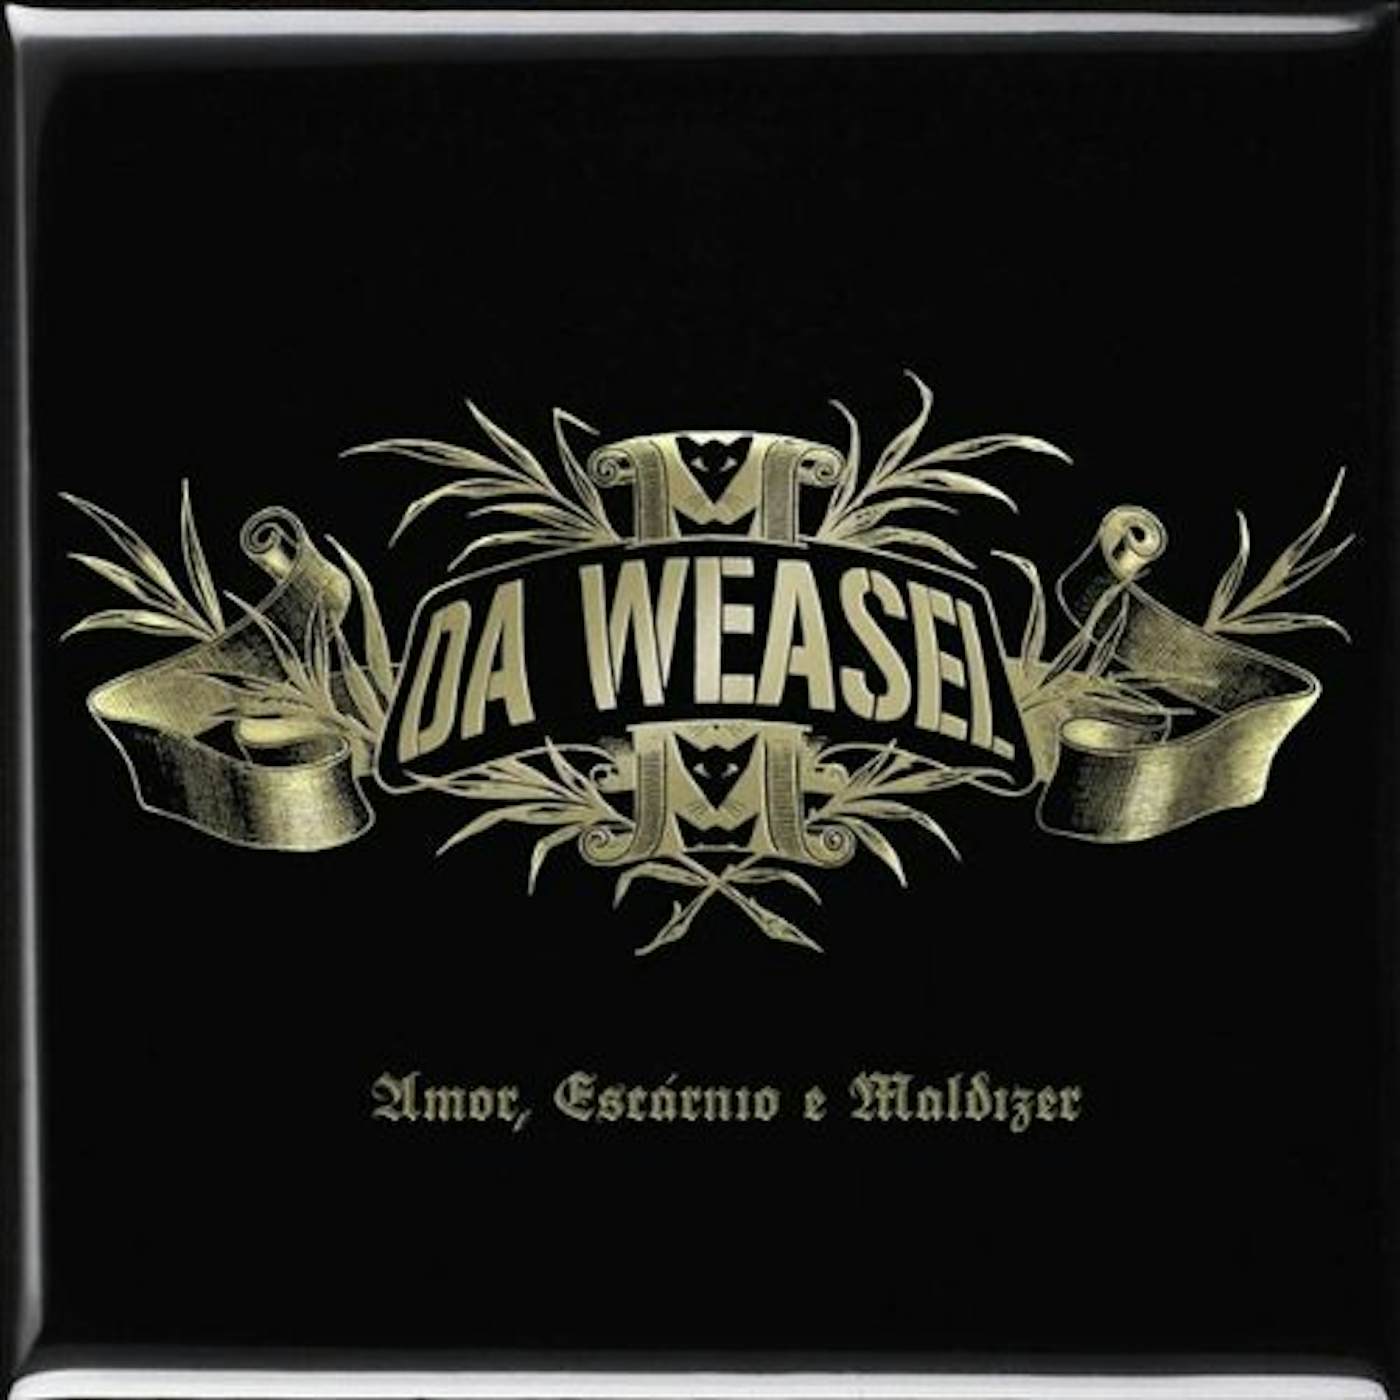 Da Weasel AMOR ESCARNIO E MALDIZER CD